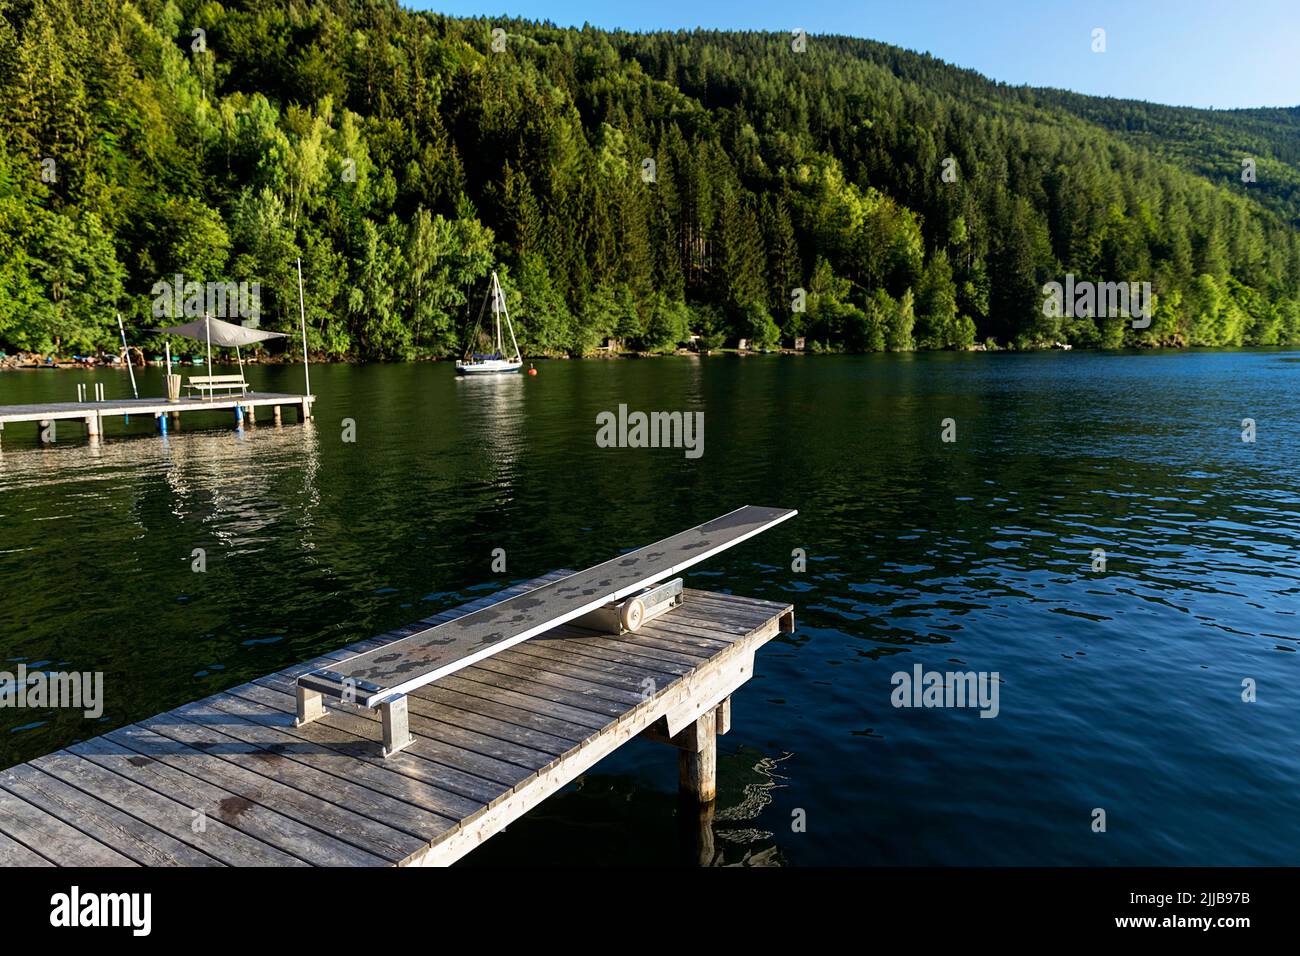 Plate-forme de plongée sur une belle jetée en bois sur le lac Millstätter See au coucher du soleil, Carinthie, Autriche Banque D'Images